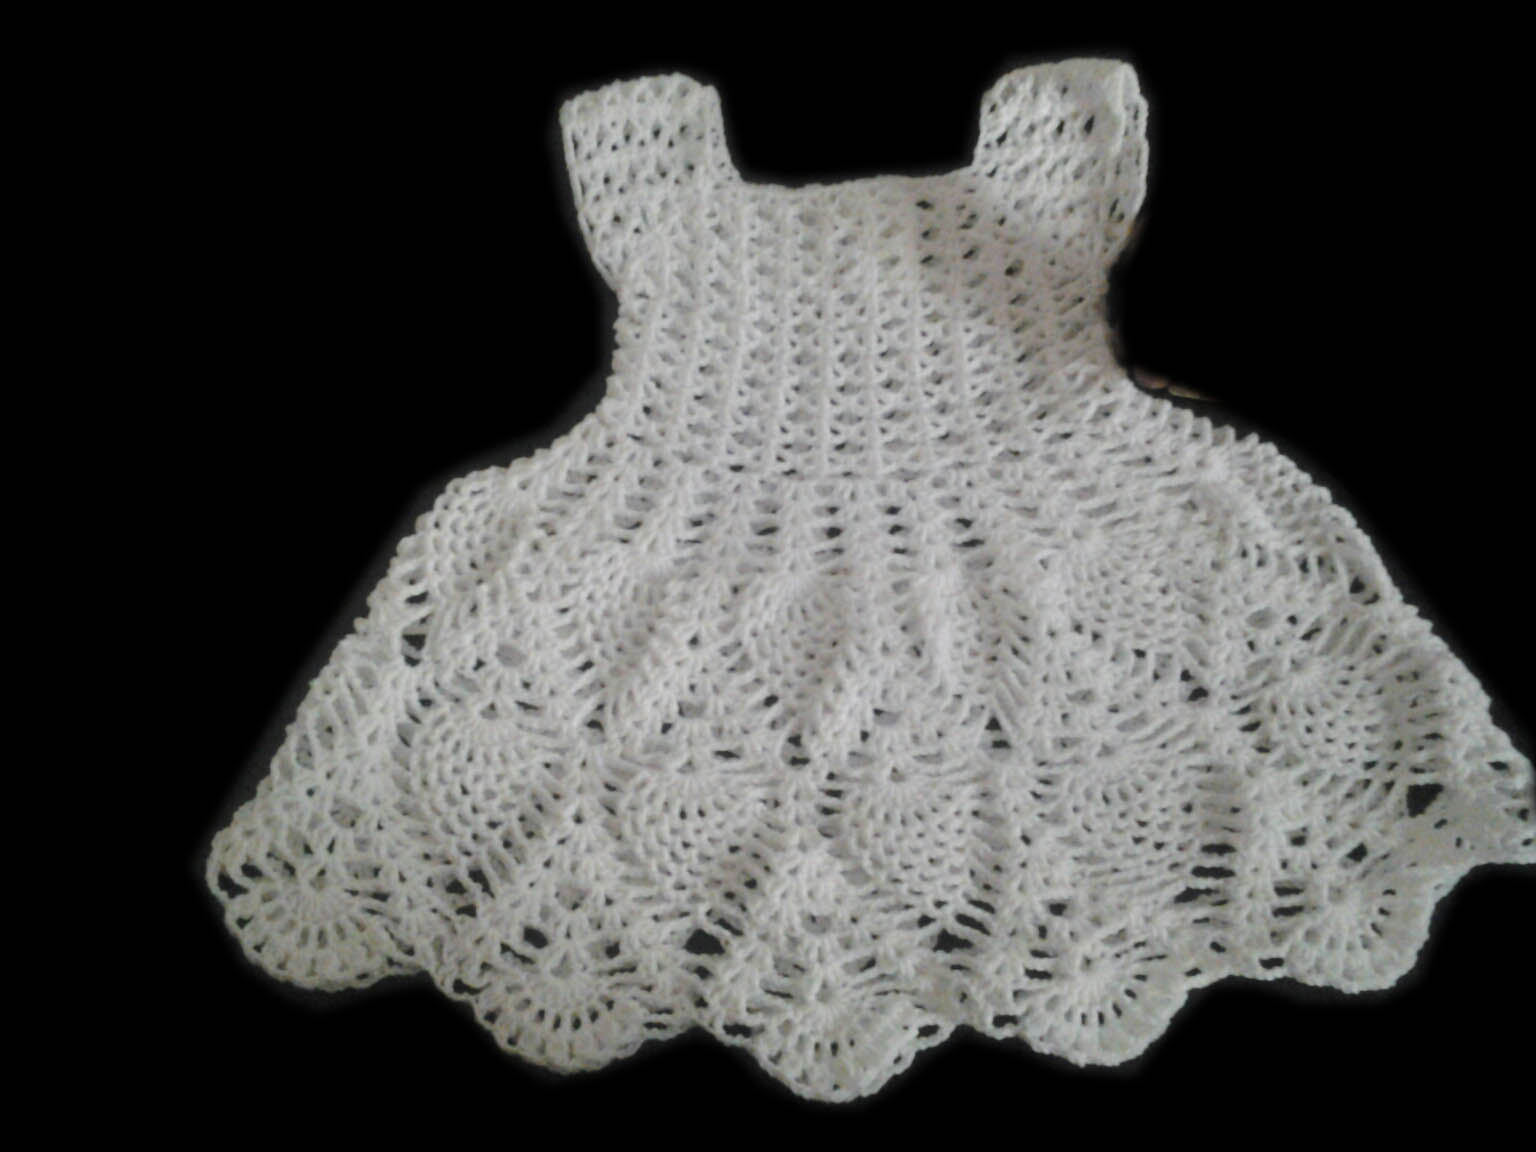 sandvicrochet: crochet pineapple dress for baby